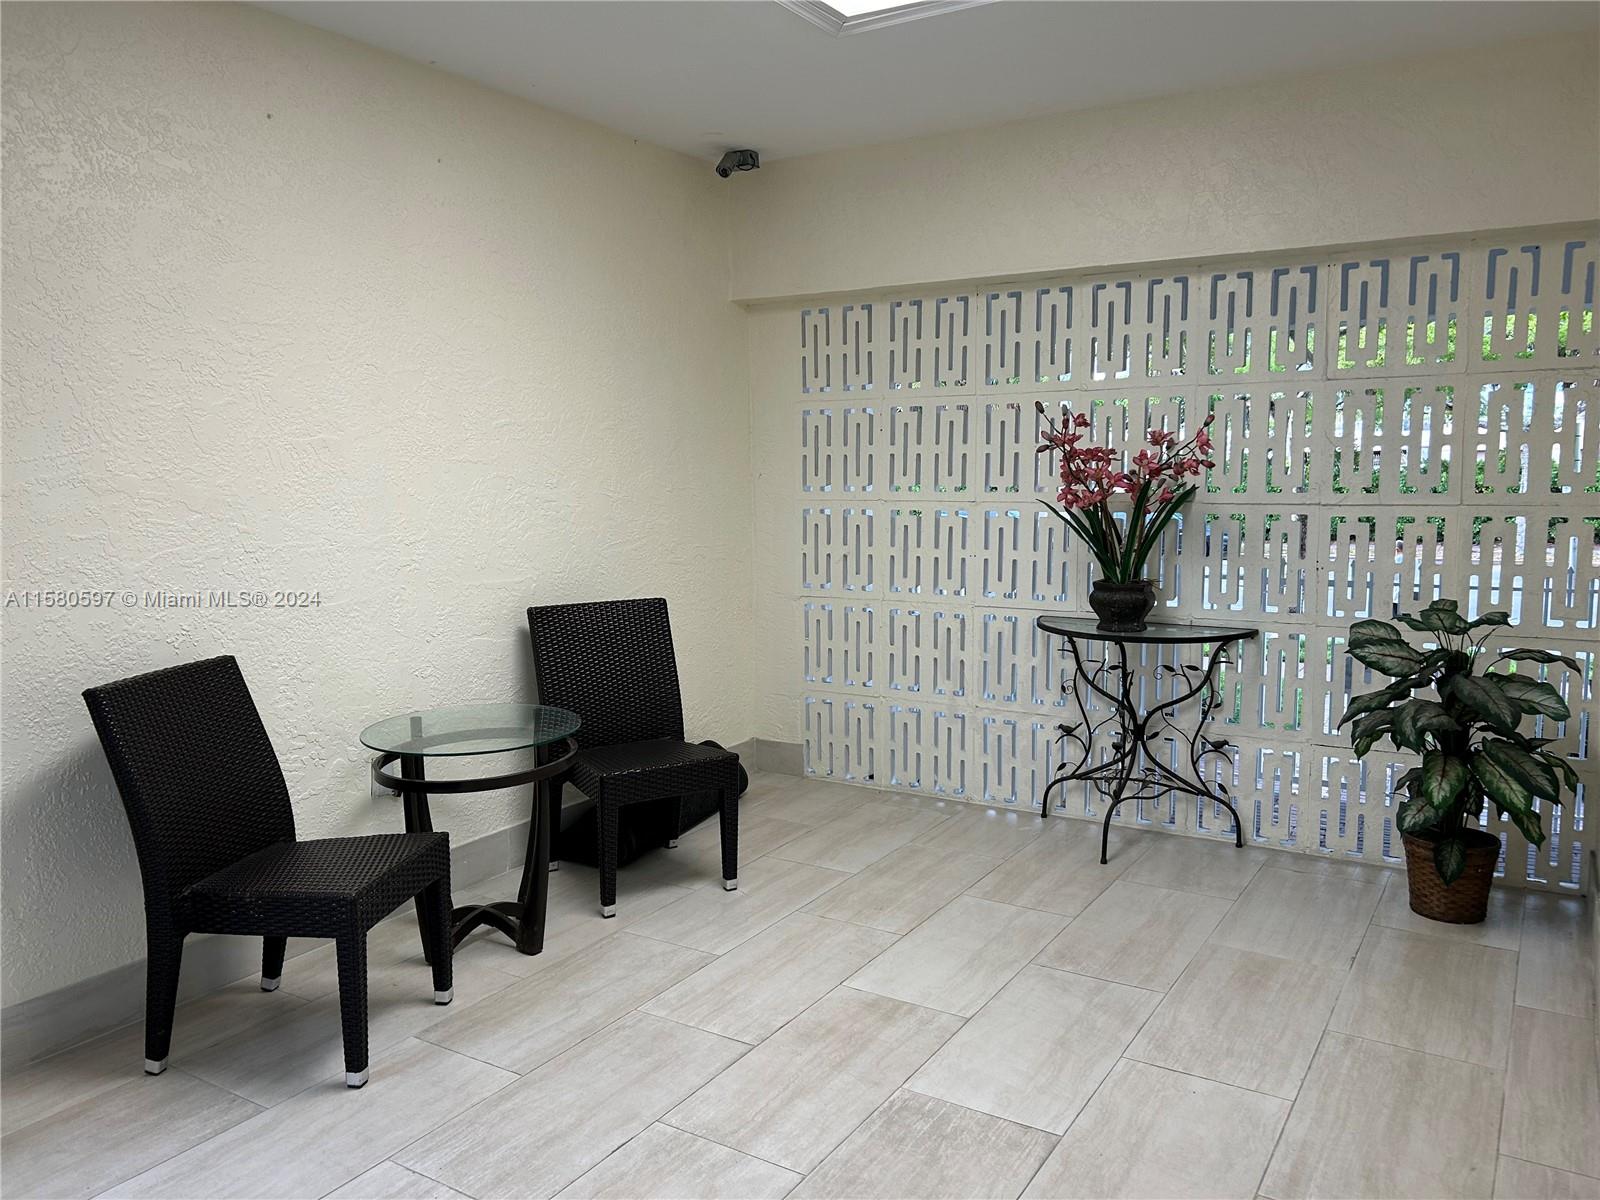 Rental Property at 1975 Normandy Dr 301, Miami Beach, Miami-Dade County, Florida - Bedrooms: 1 
Bathrooms: 1  - $1,950 MO.